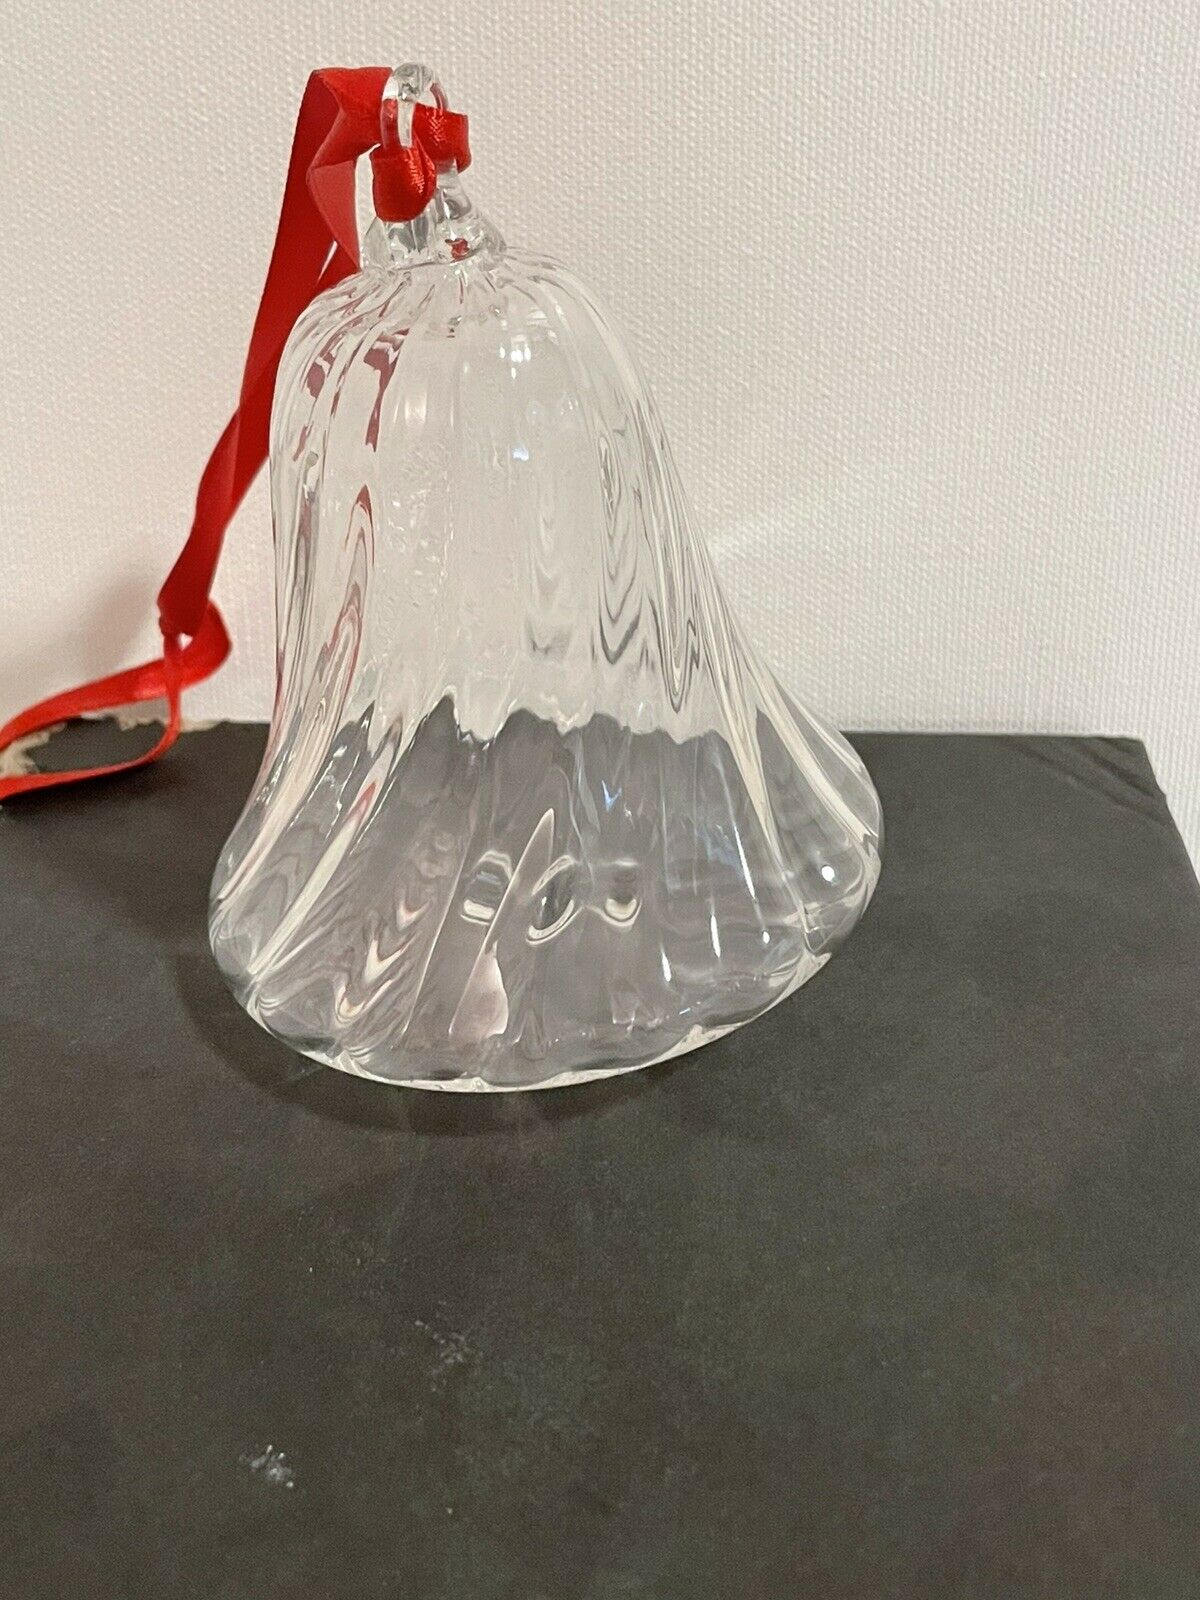 Steuben Glass Bell Ornament